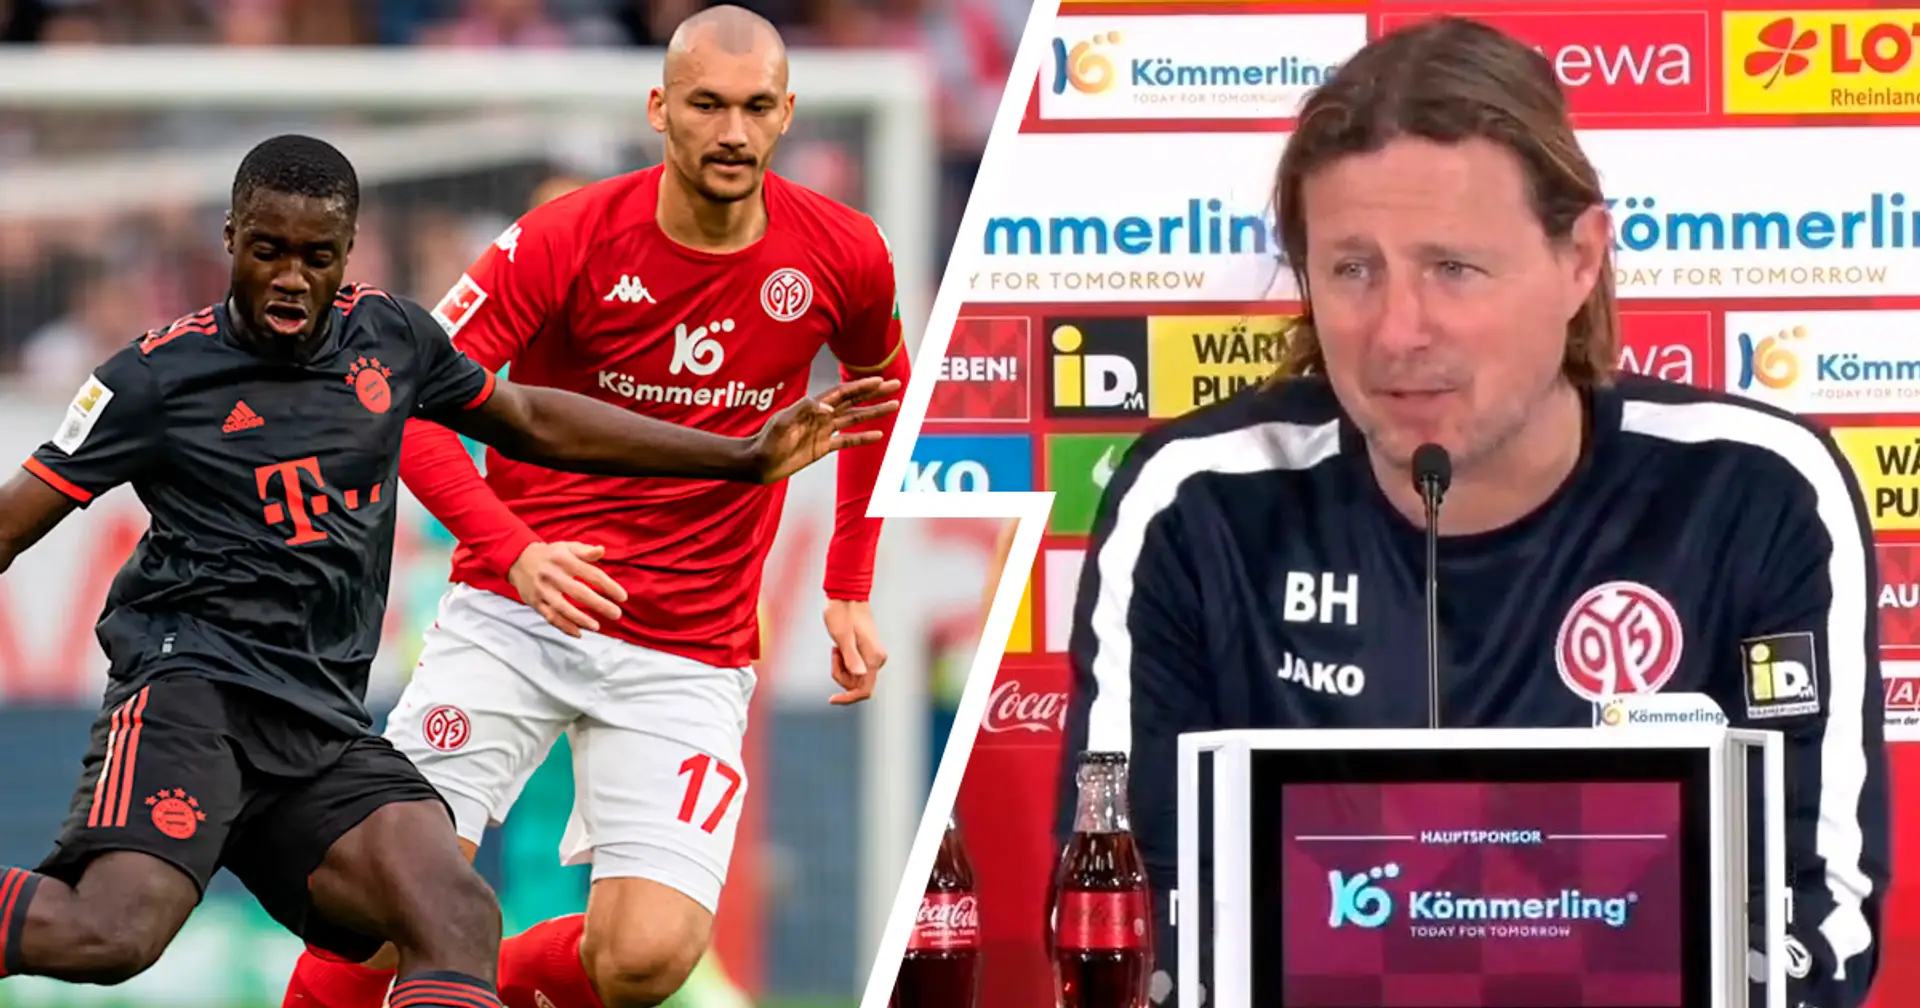 "Wissen, dass wir ihnen wehtun können": Mainz-Coach Henriksen gibt sich kämpferisch vor Duell vs. Bayern